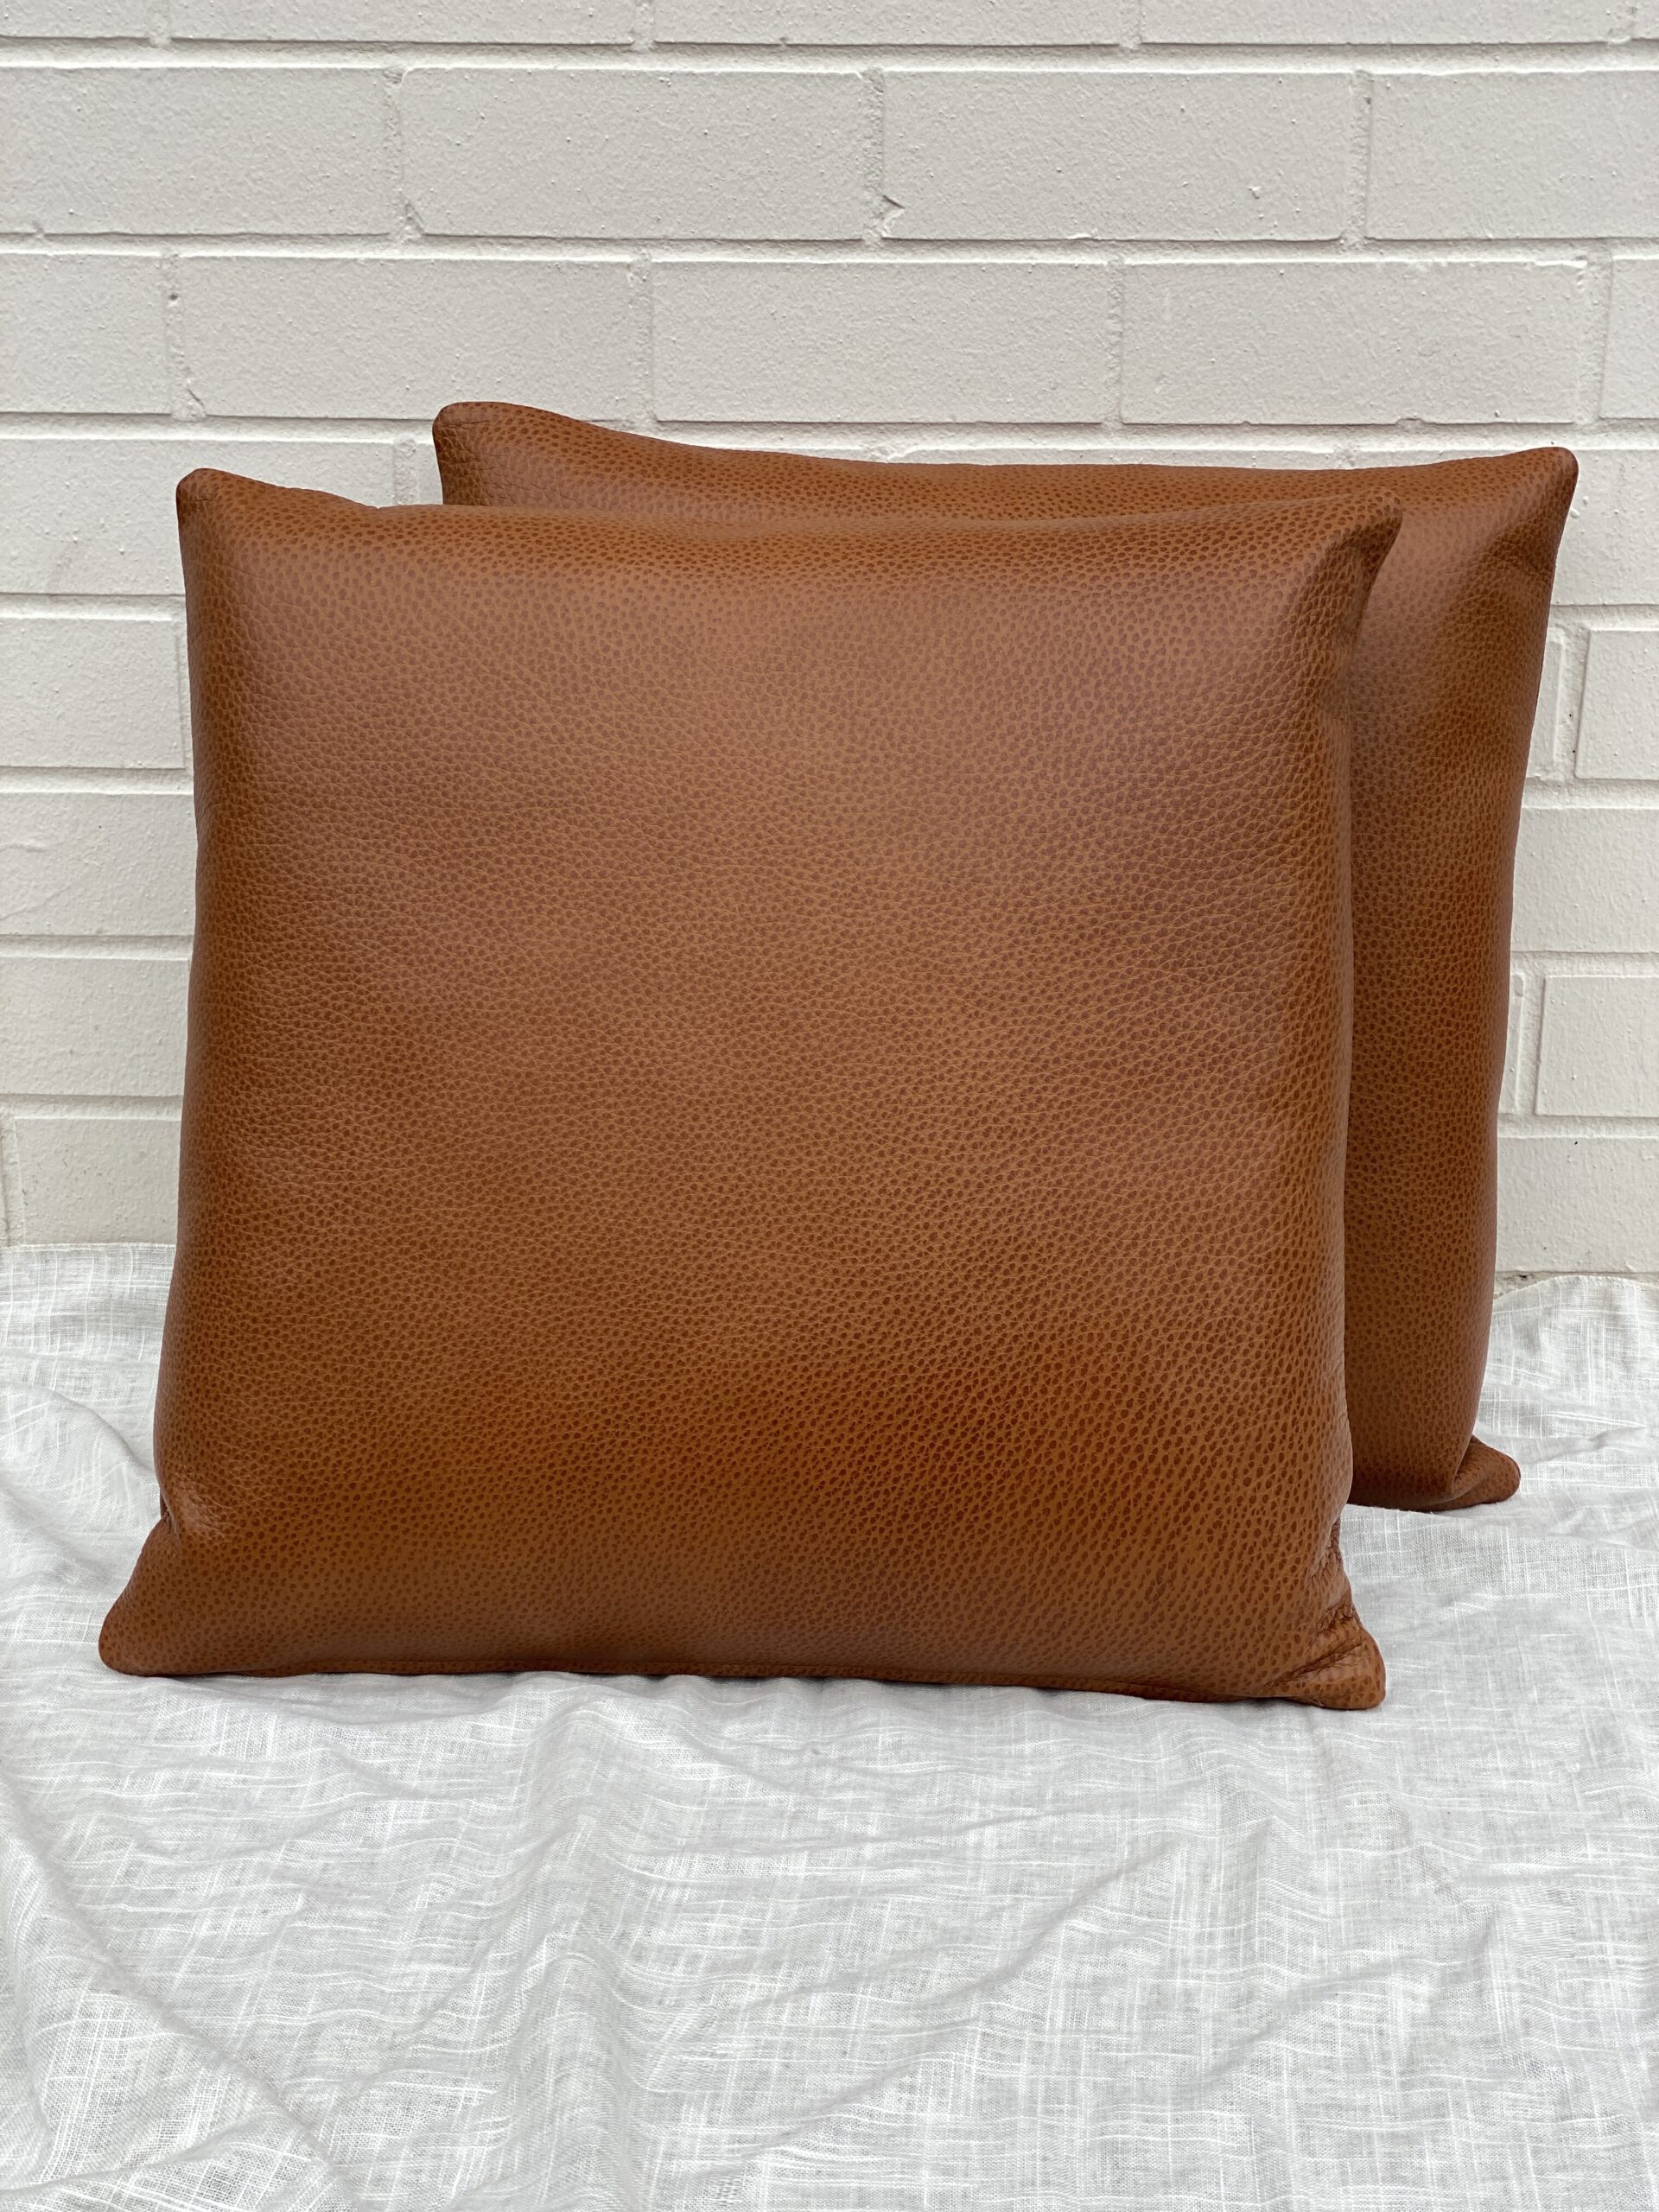 Edelman Leather Pillows